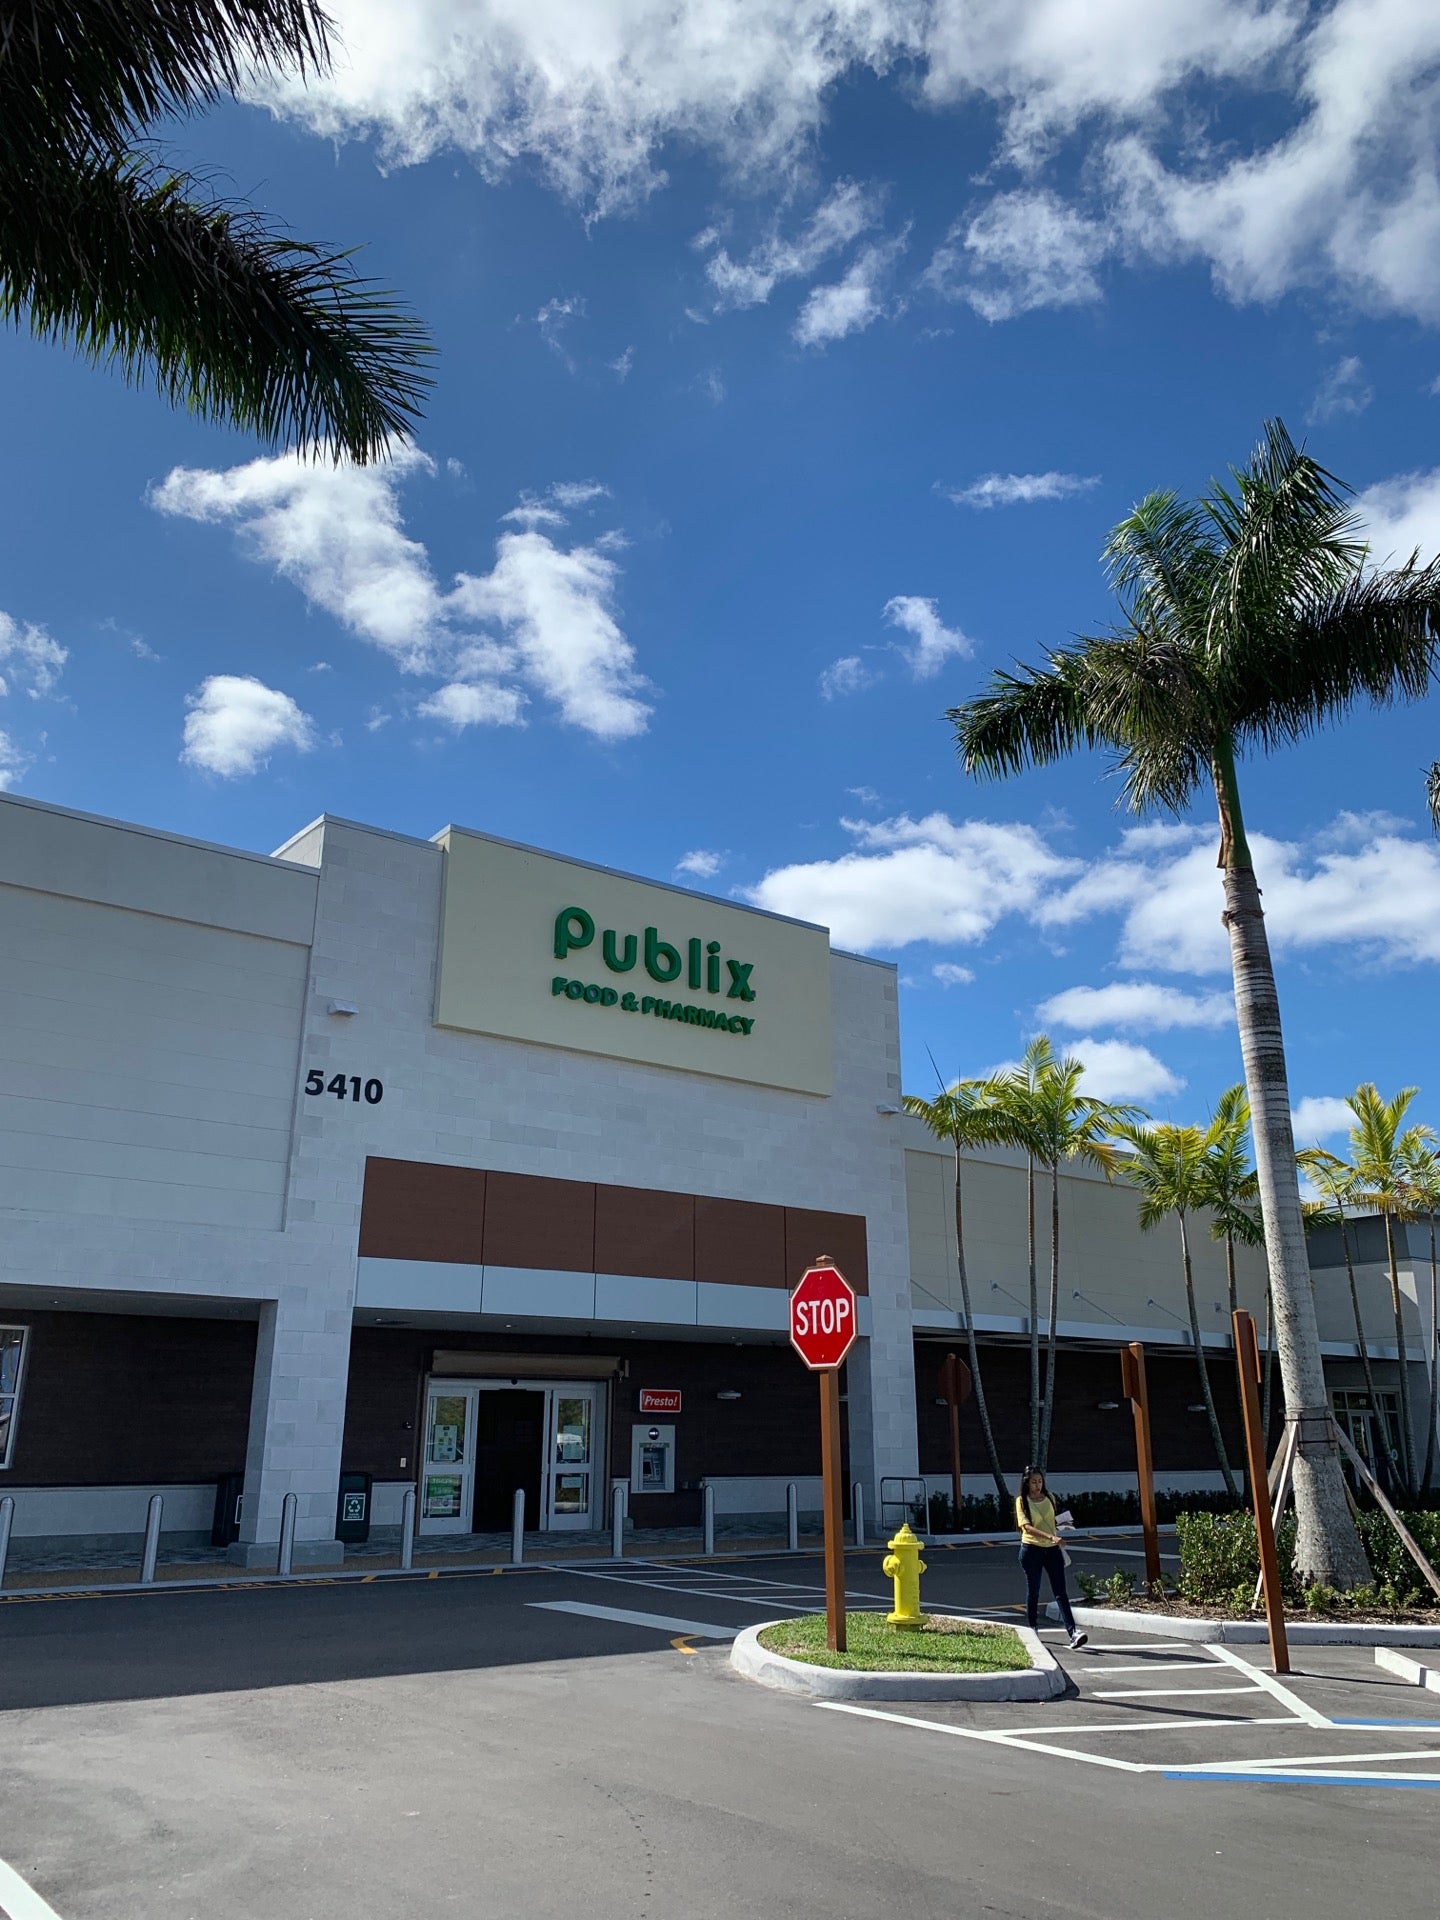 Alton Town Center  Shopping & more in Palm Beach Gardens